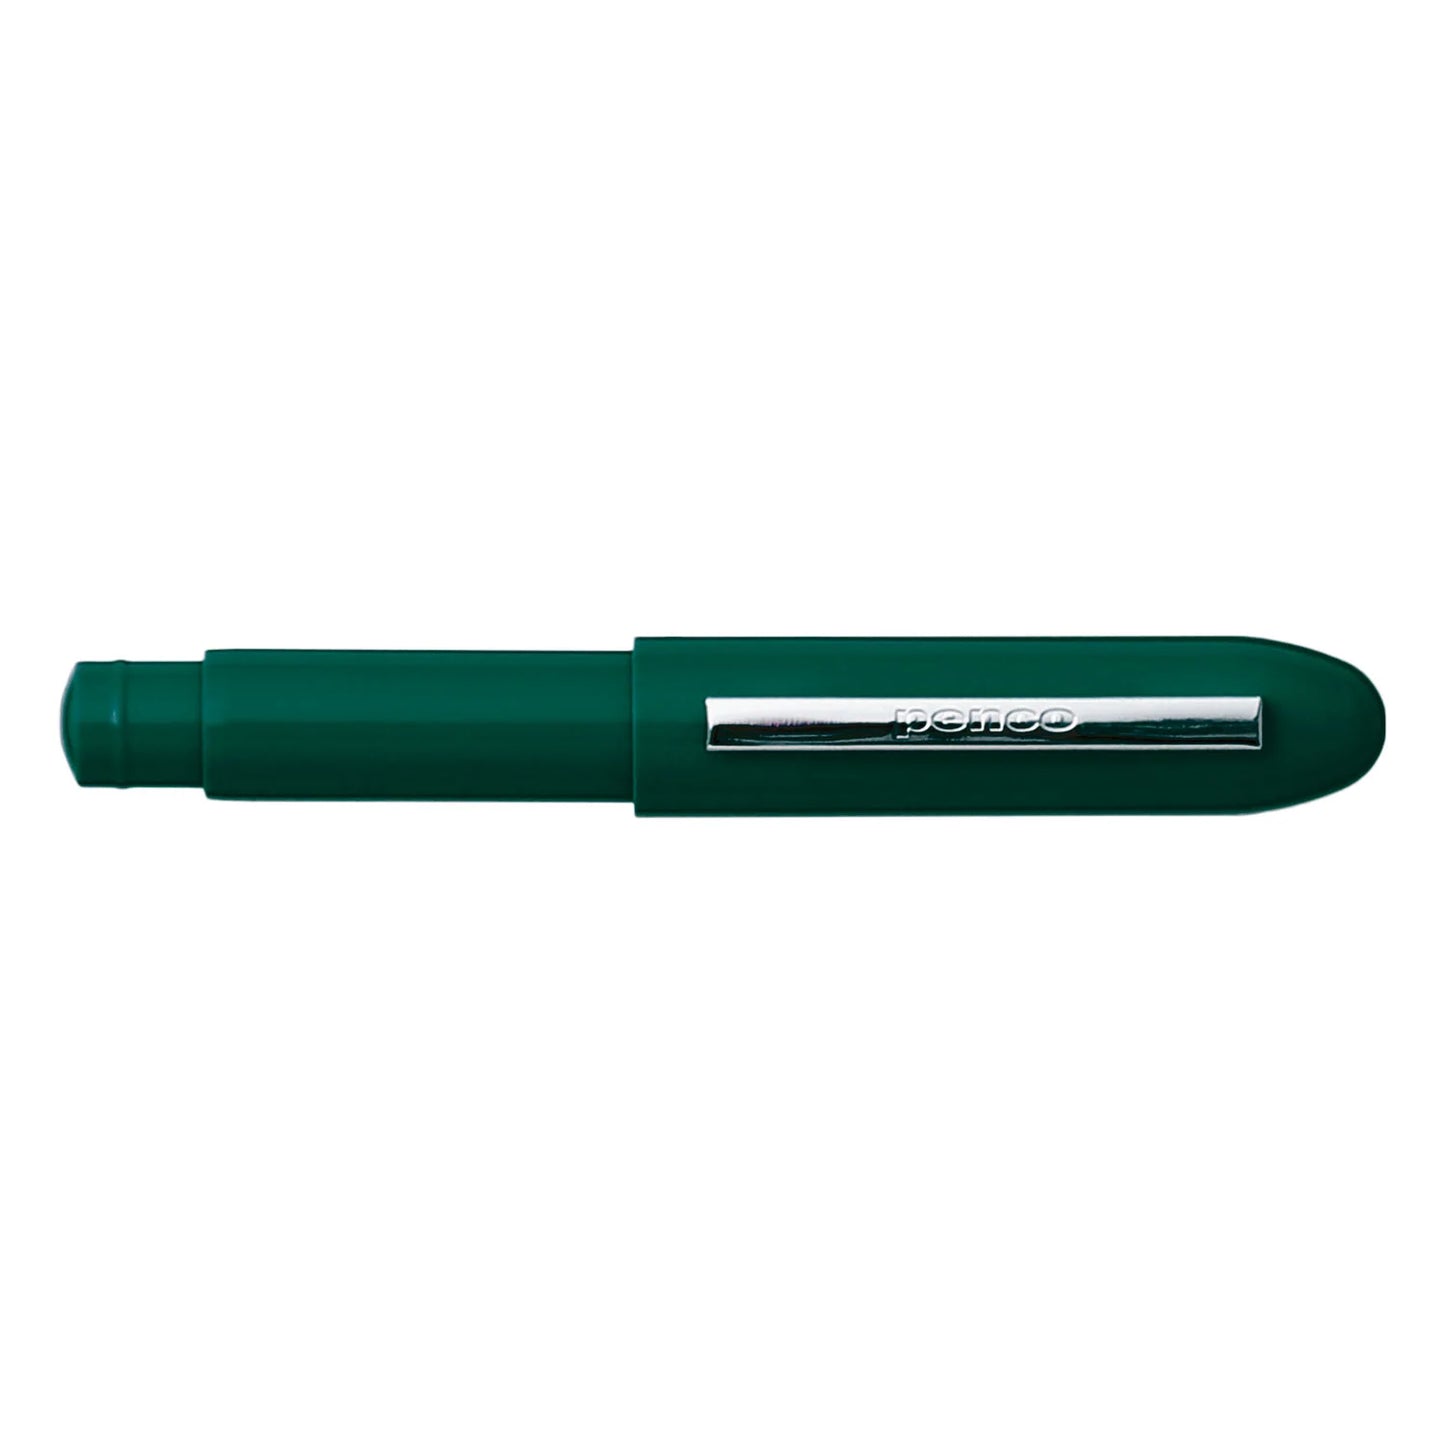 Bullet Pencil Pens & Pencils Hightide USA Dark Green  